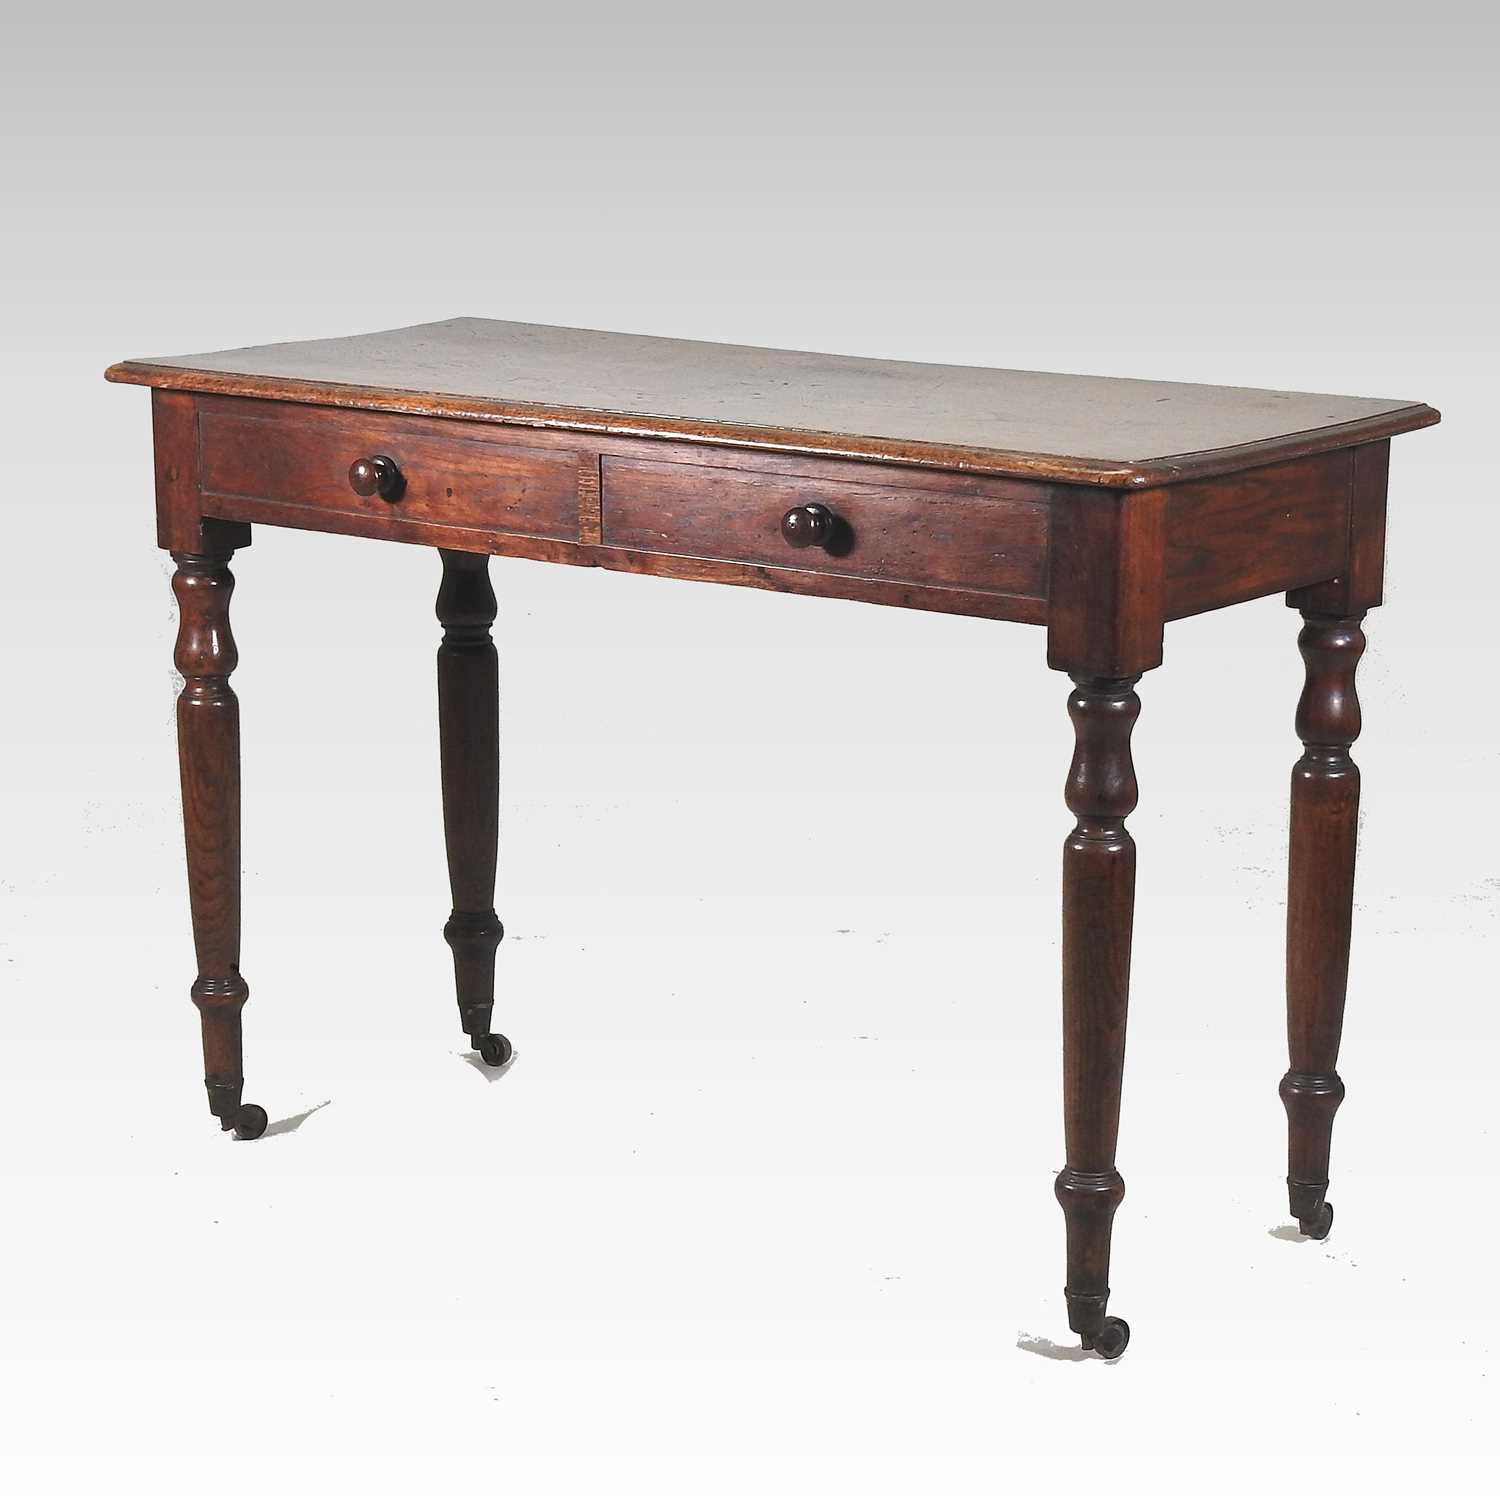 An early 19th century burr elm side table